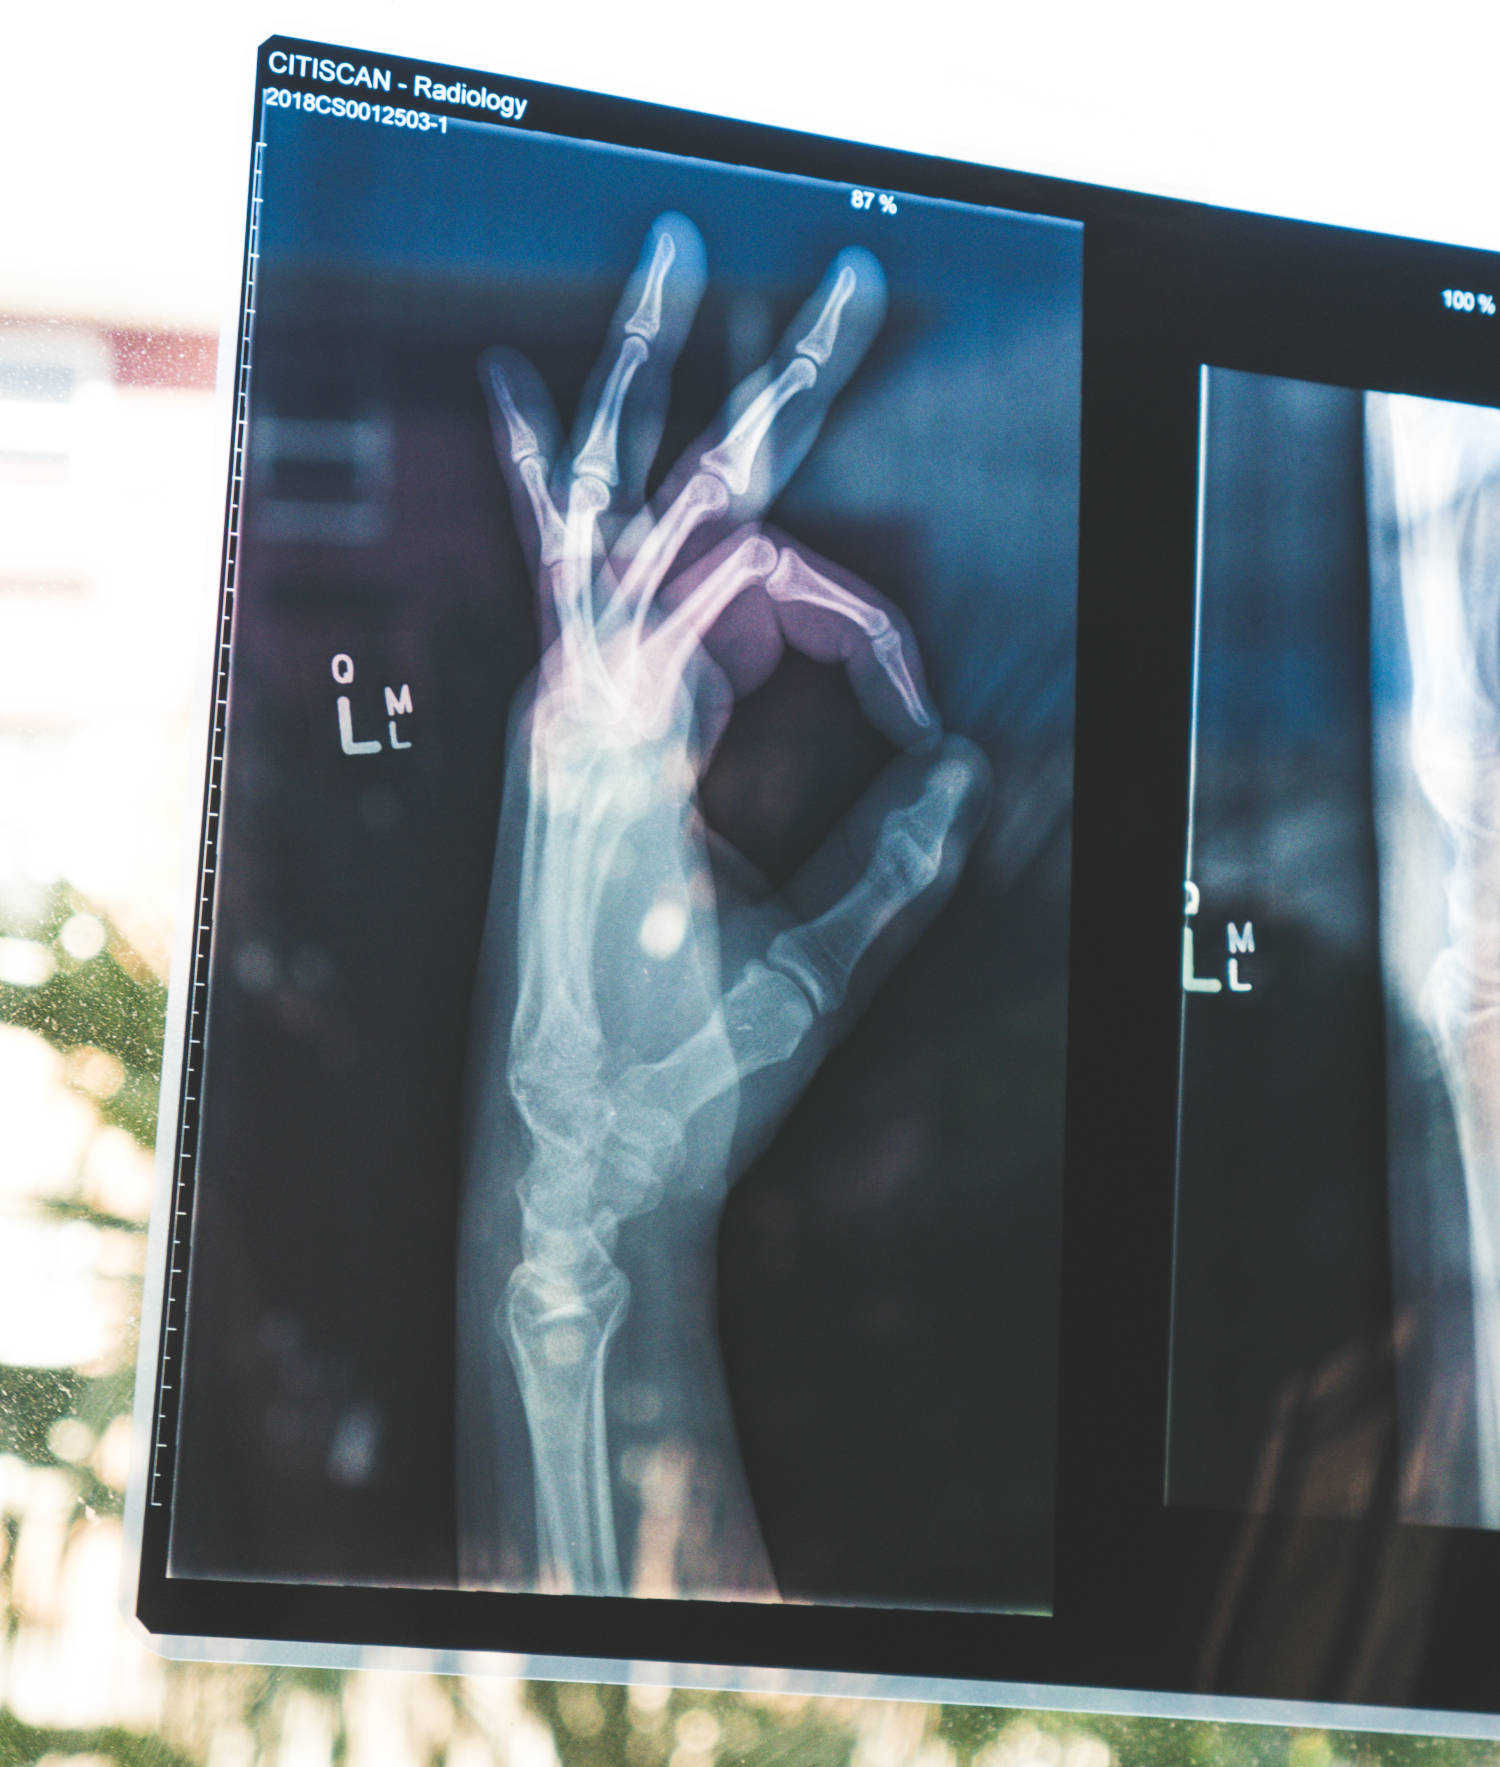 Röntgenbild Hand und Unterarm mit angedeutetem 'ok'-Kreis als Symbol für transparente Durchleuchtung. Bild von Owen Beard über Unsplash.